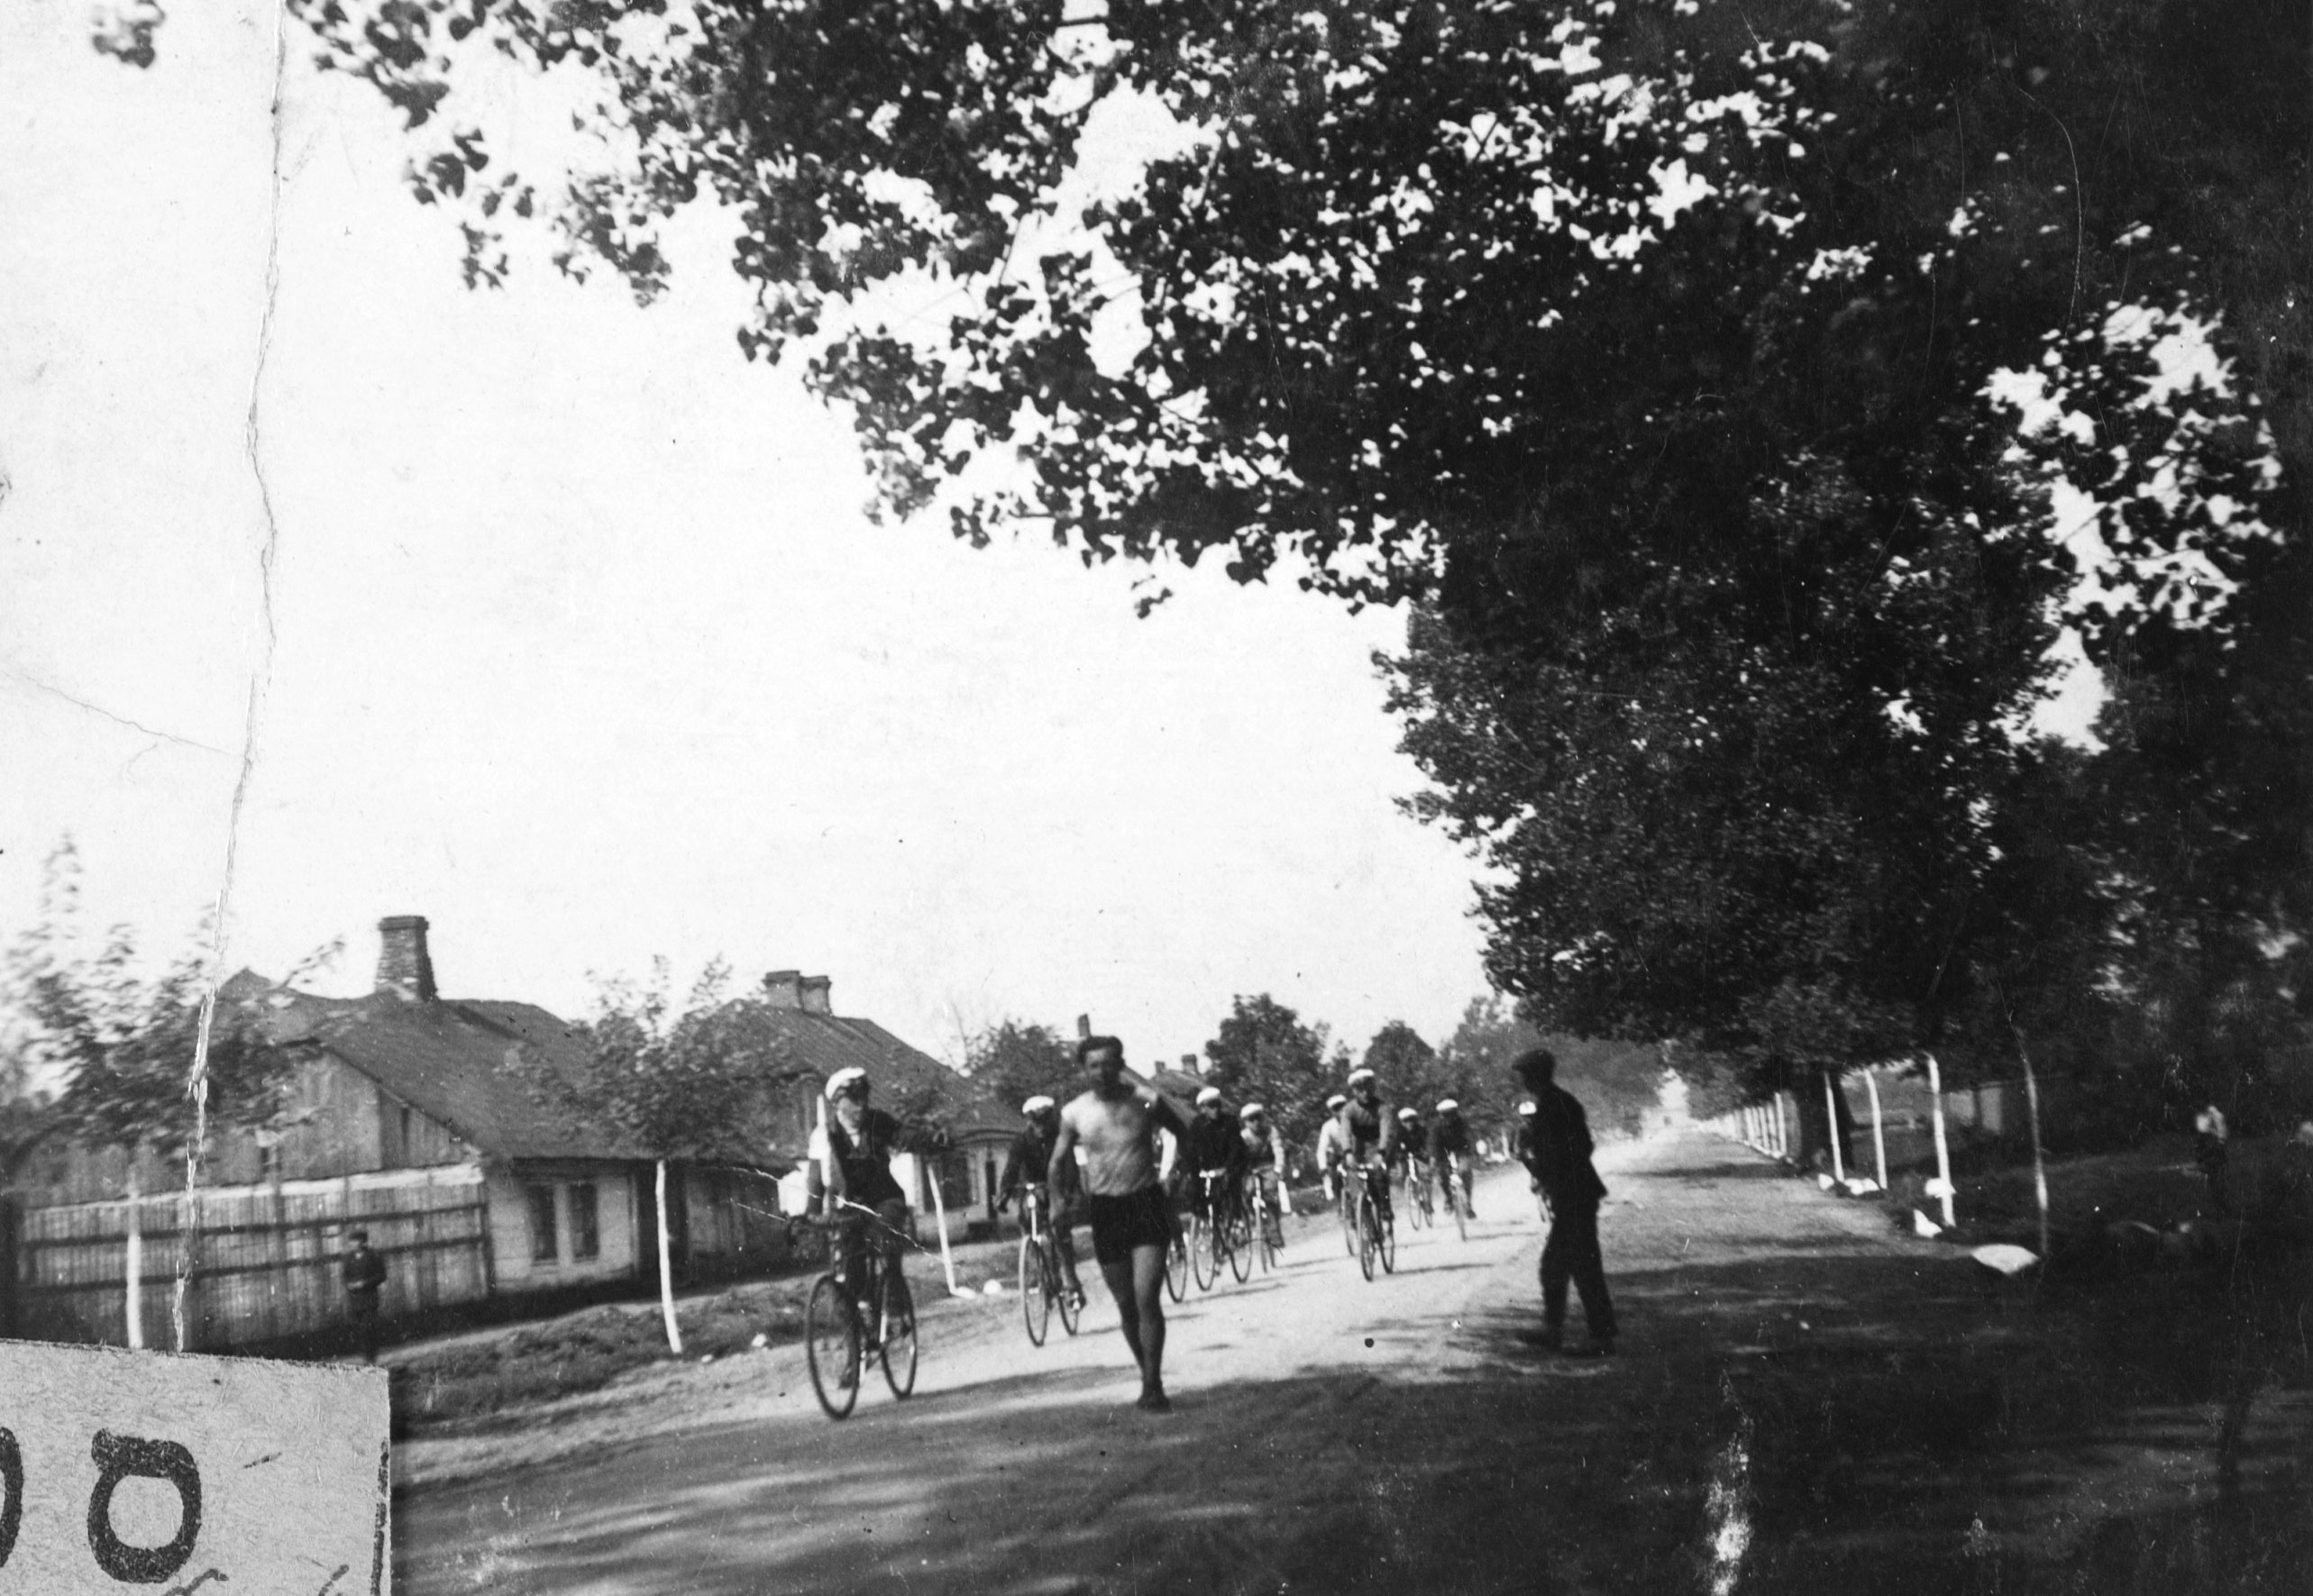 משה צוקרמן, קפטן נבחרת רוכבי האופניים של אגודת הספורט בר כוכבא בלודז', מוביל קבוצת רוכבים שדיוושה 240 ק"מ מלודז' לוורשה ובחזרה, לשם השתתפות בתחרות בוורשה. 